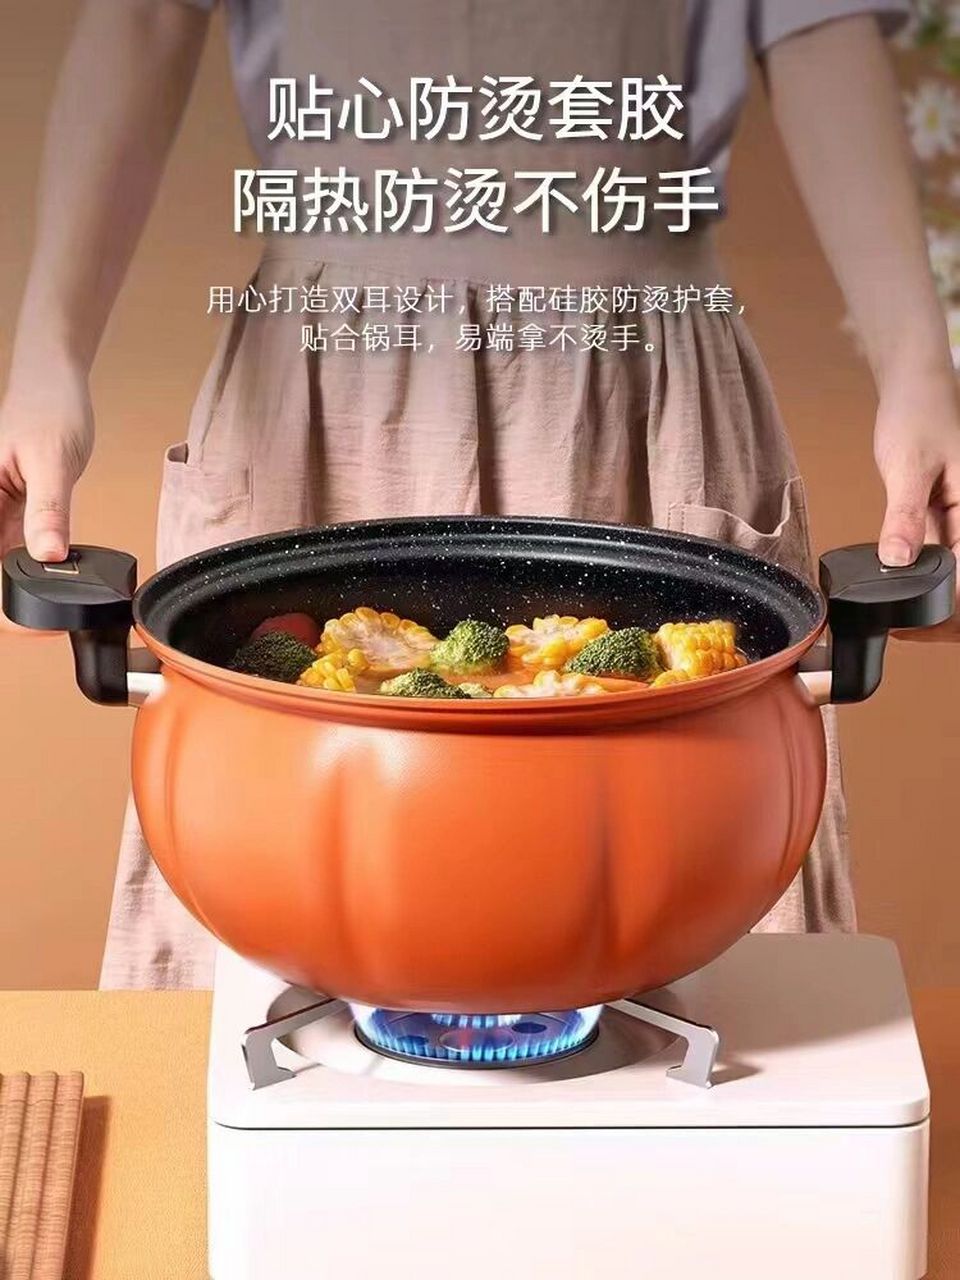 微压焖烧锅锅盖安装图片